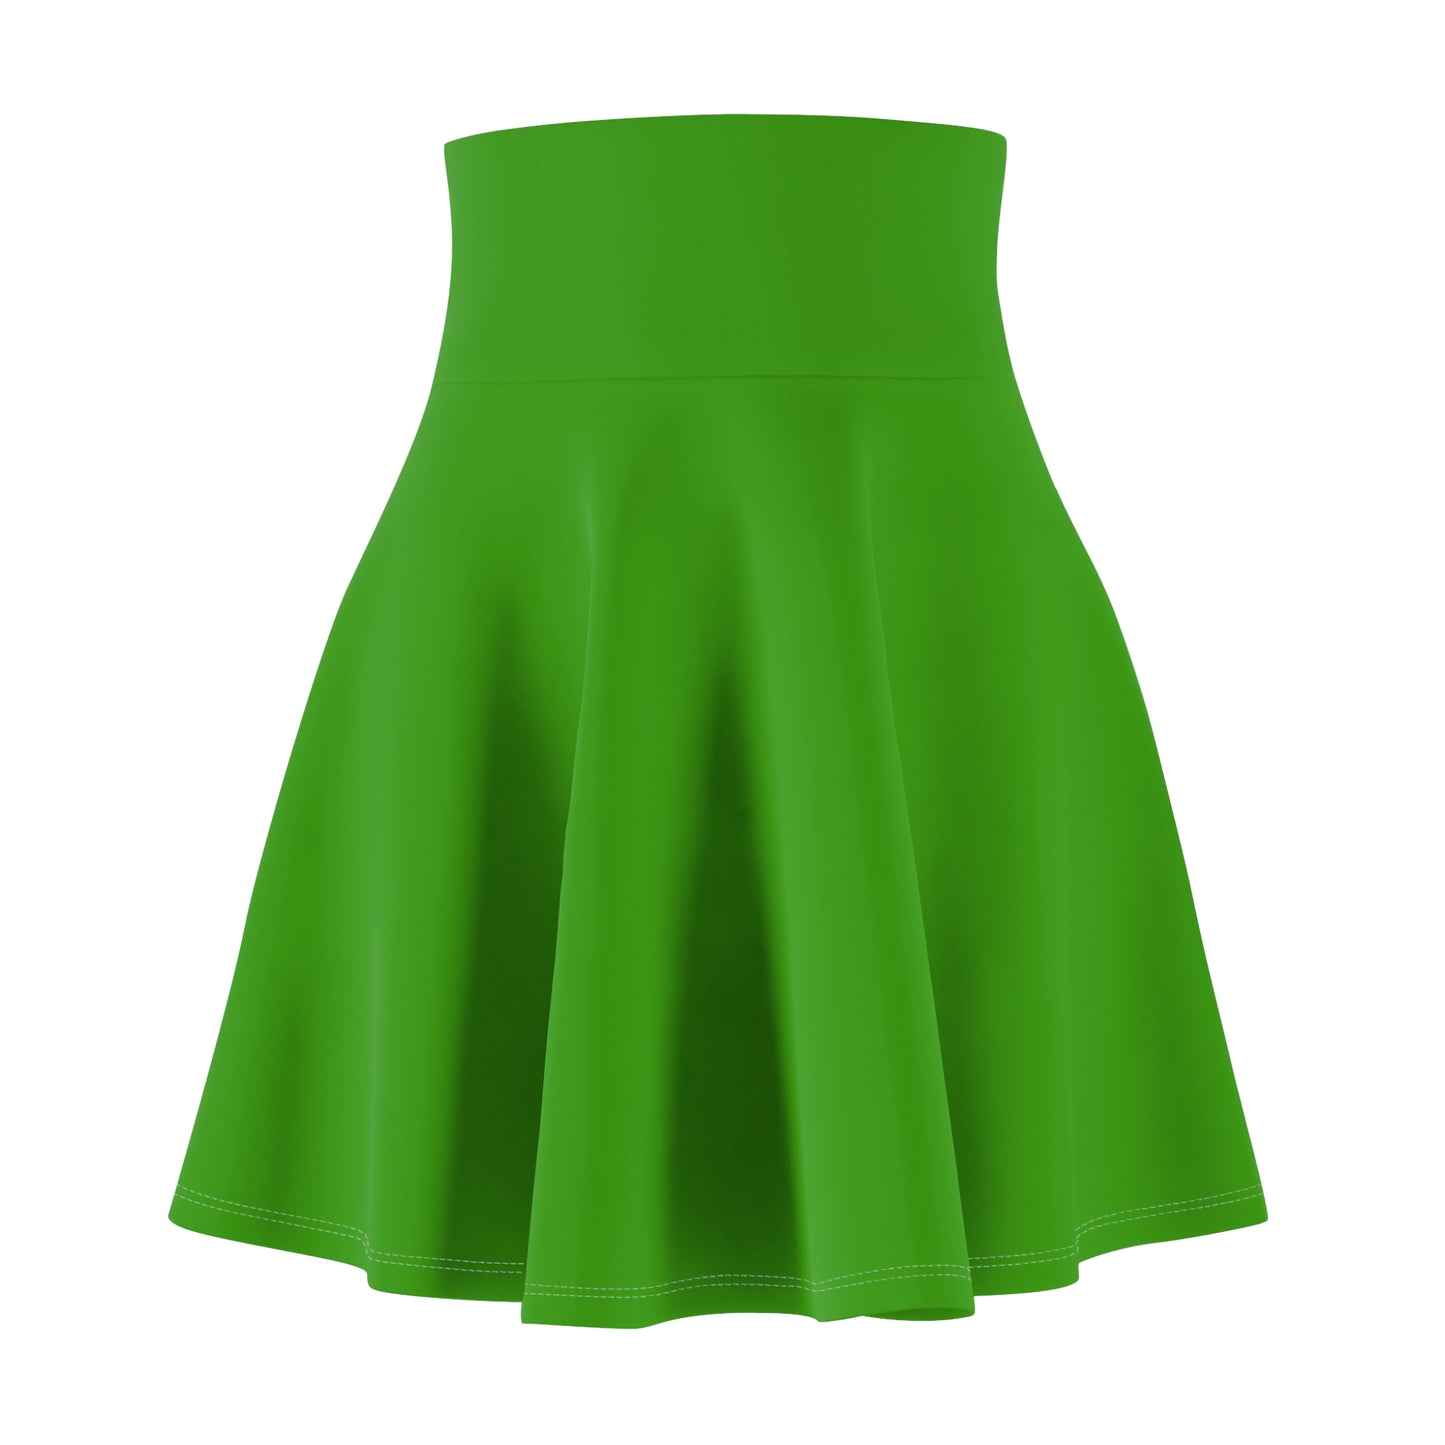 Lime Green Women's Skater Skirt